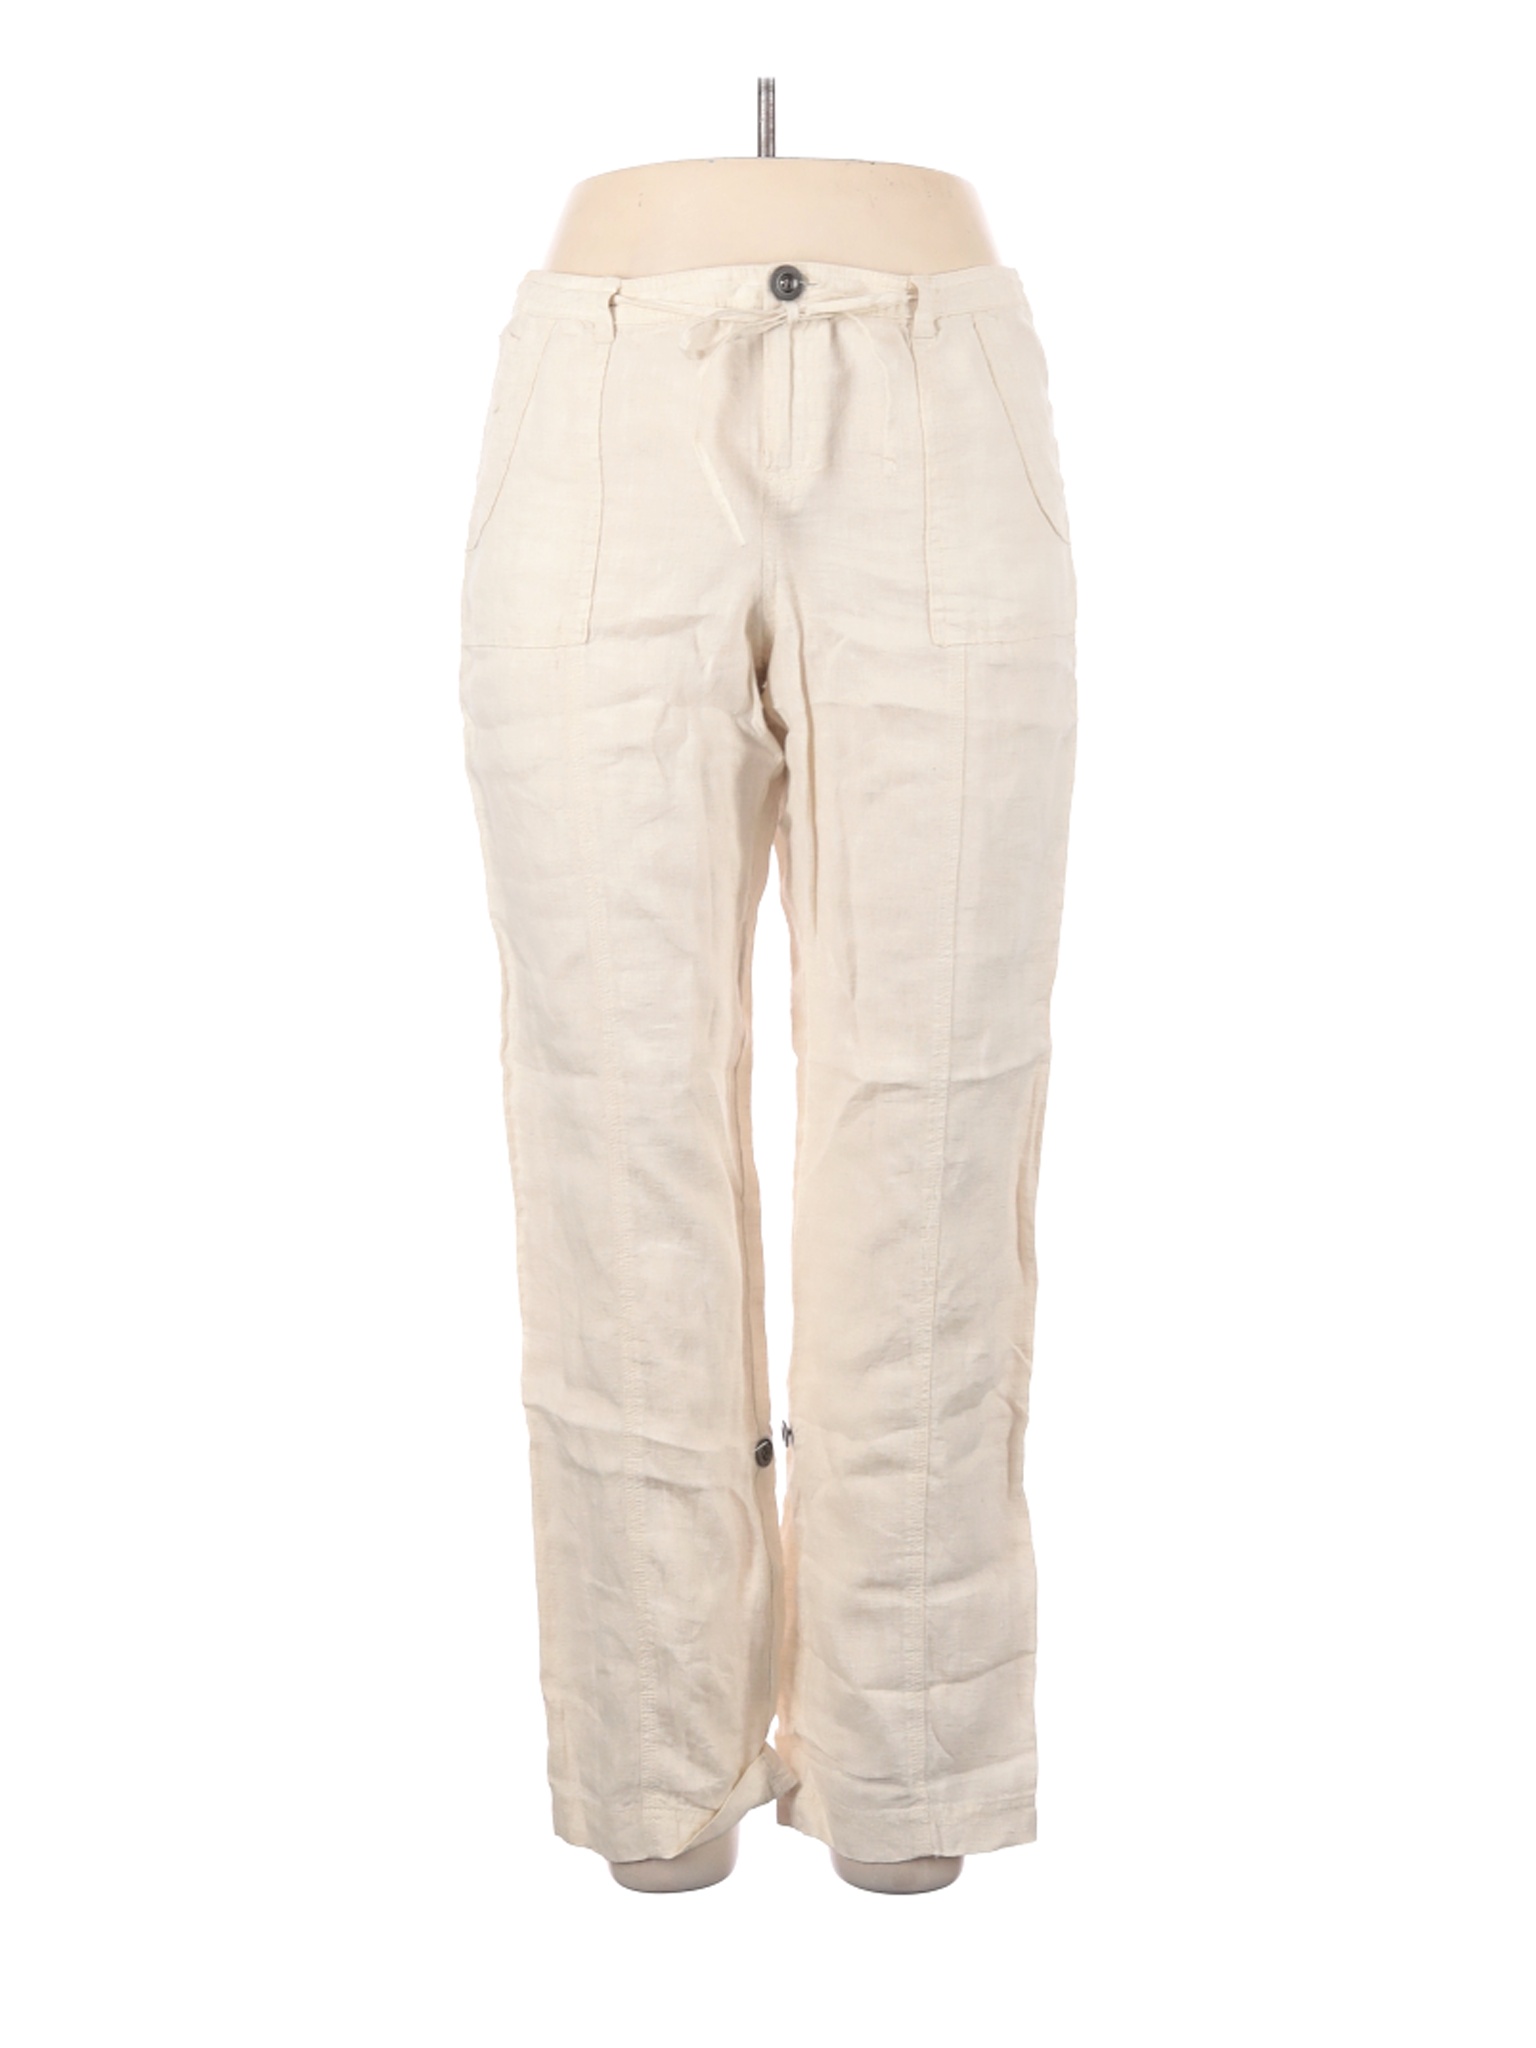 Style&Co Women Ivory Linen Pants 12 | eBay